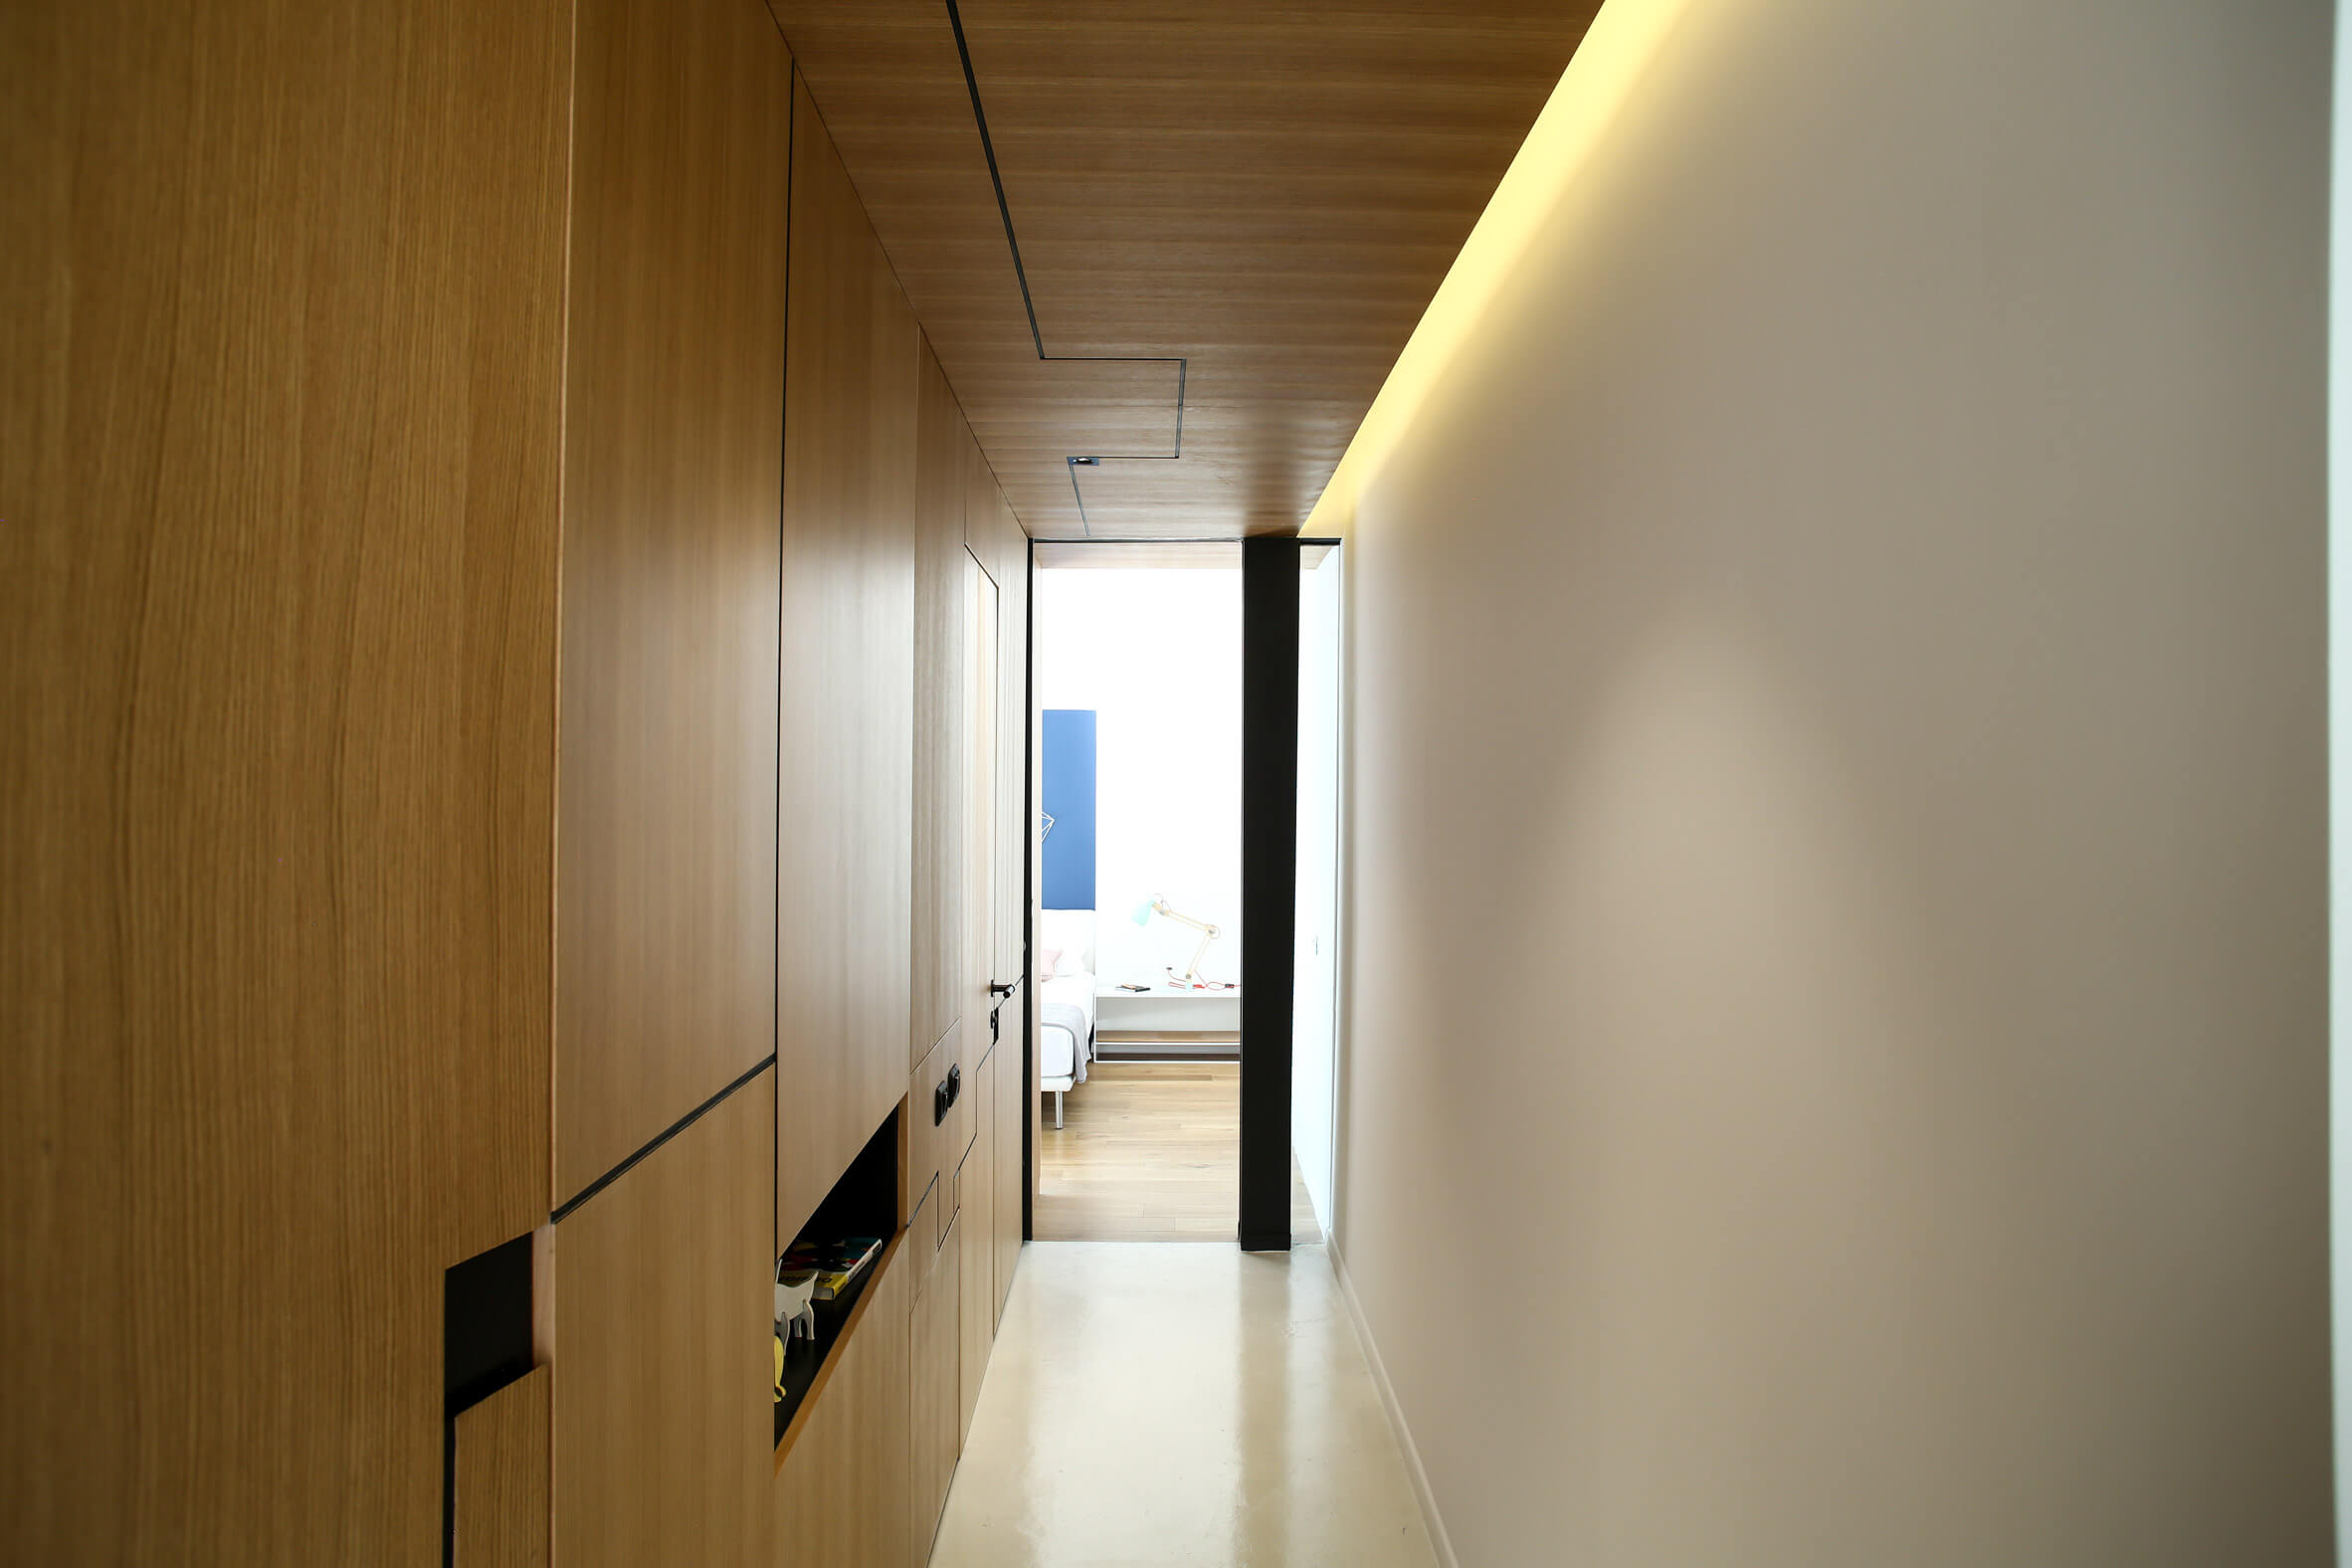 Apartamento de 1950 ganha reforma e ambientes integrados - Corredor painel de madeira